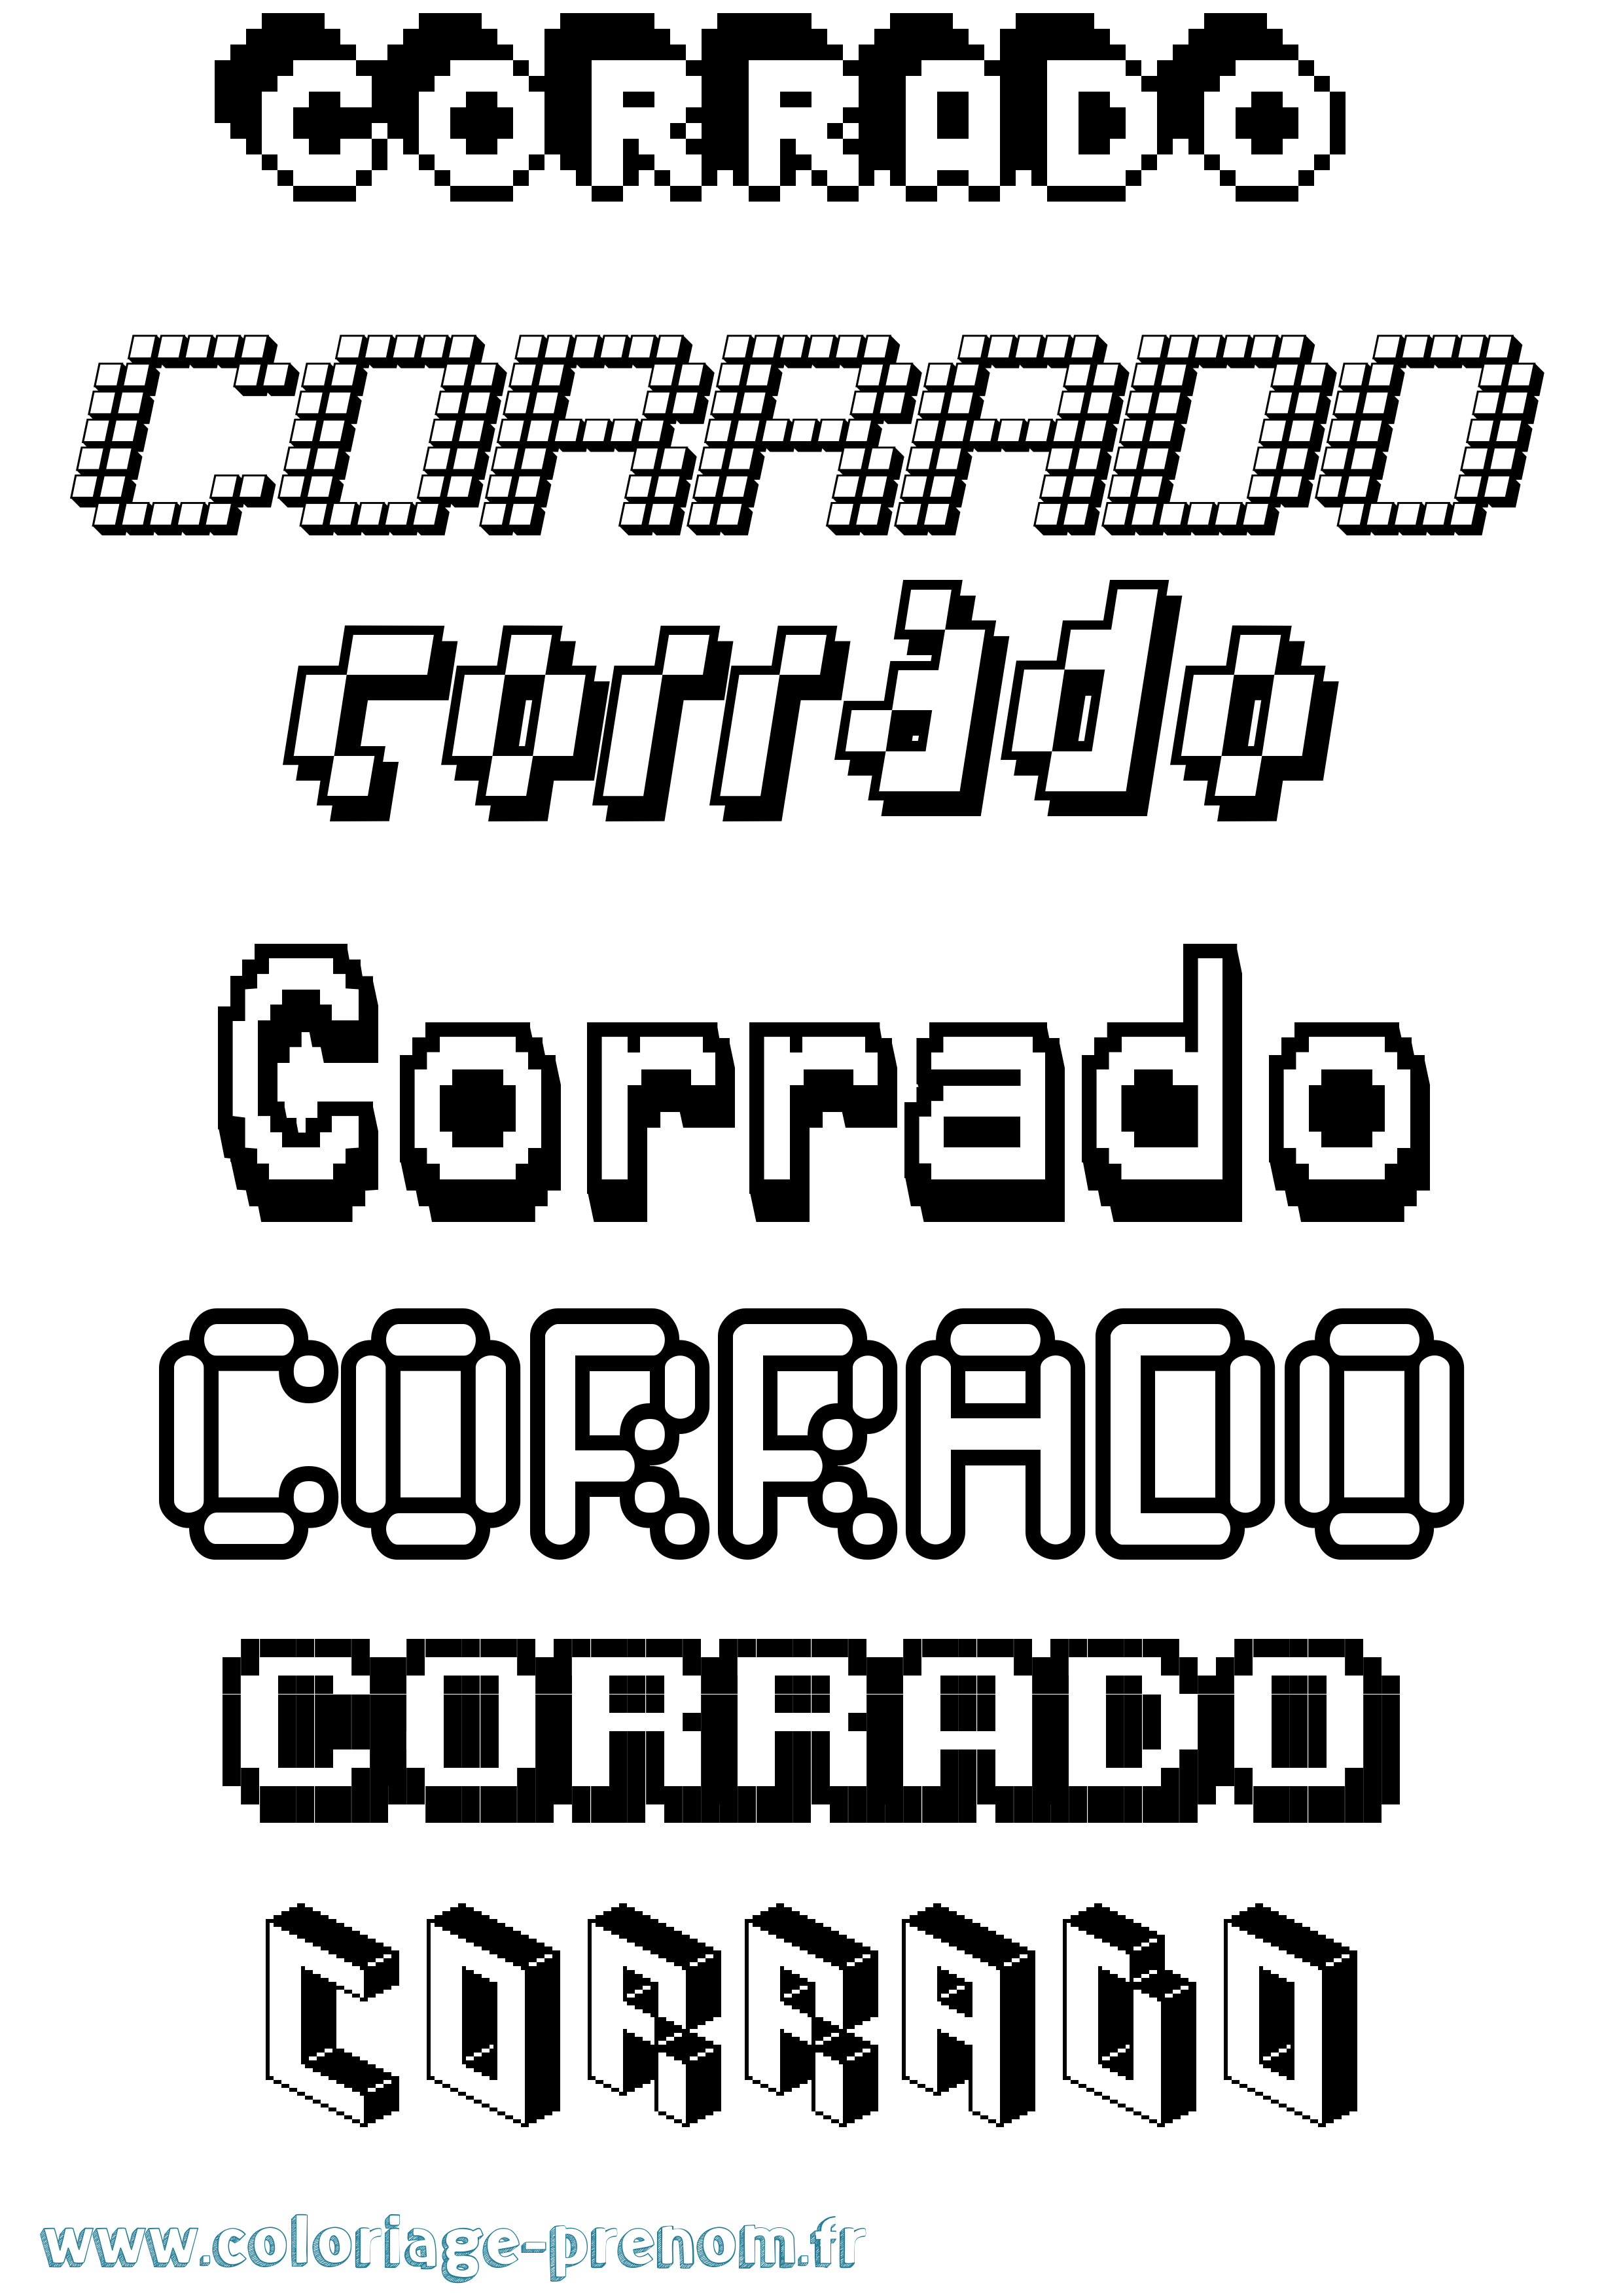 Coloriage prénom Corrado Pixel